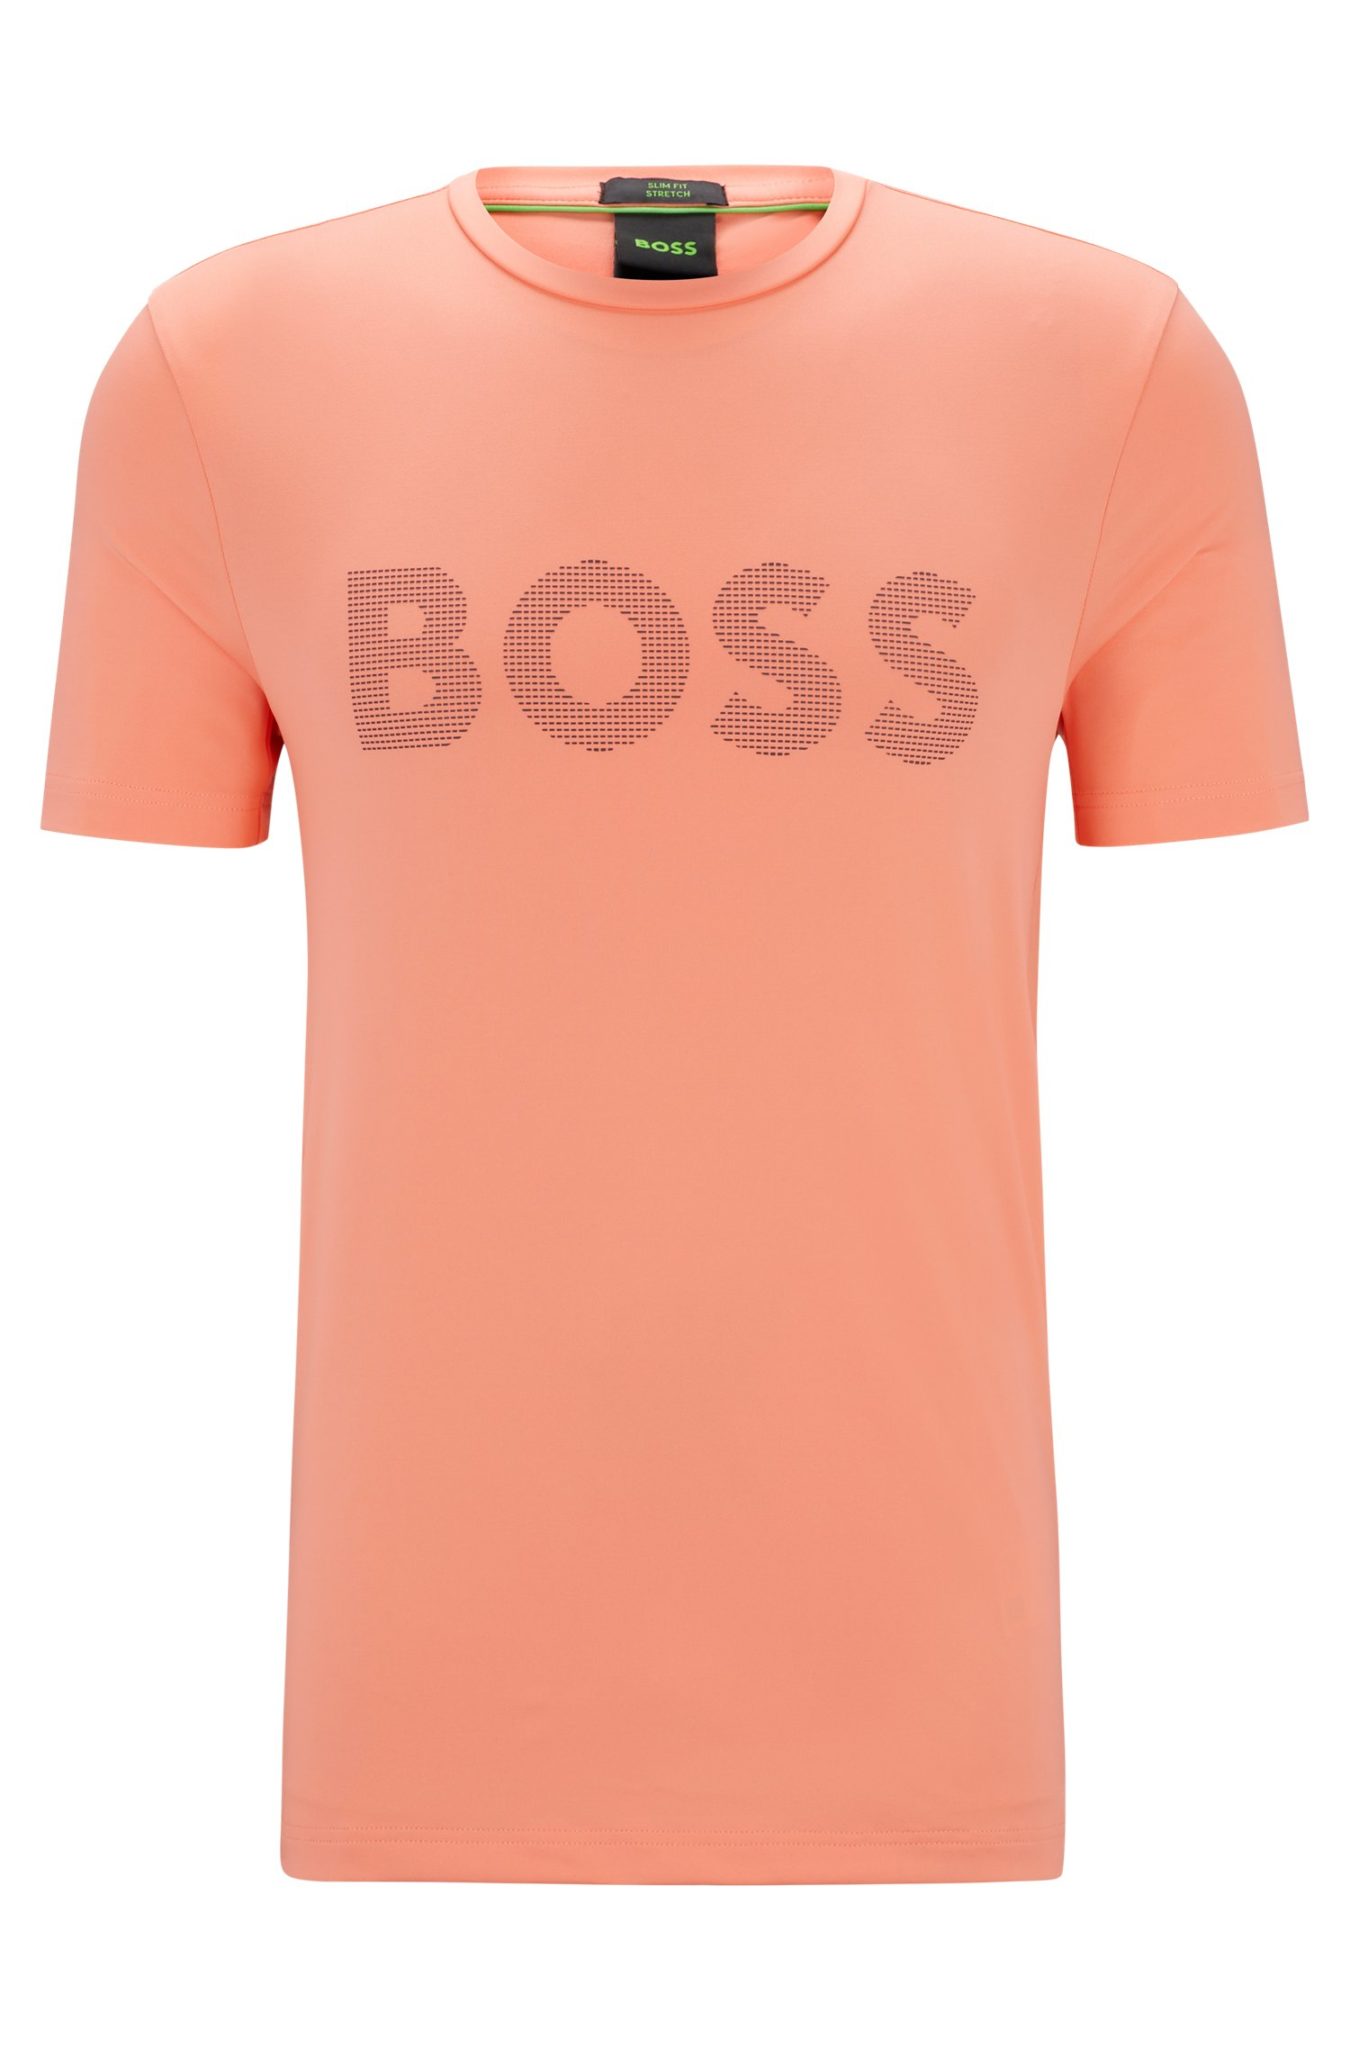 Hugo Boss T-shirt en stretch performant avec logo réfléchissant décoratif